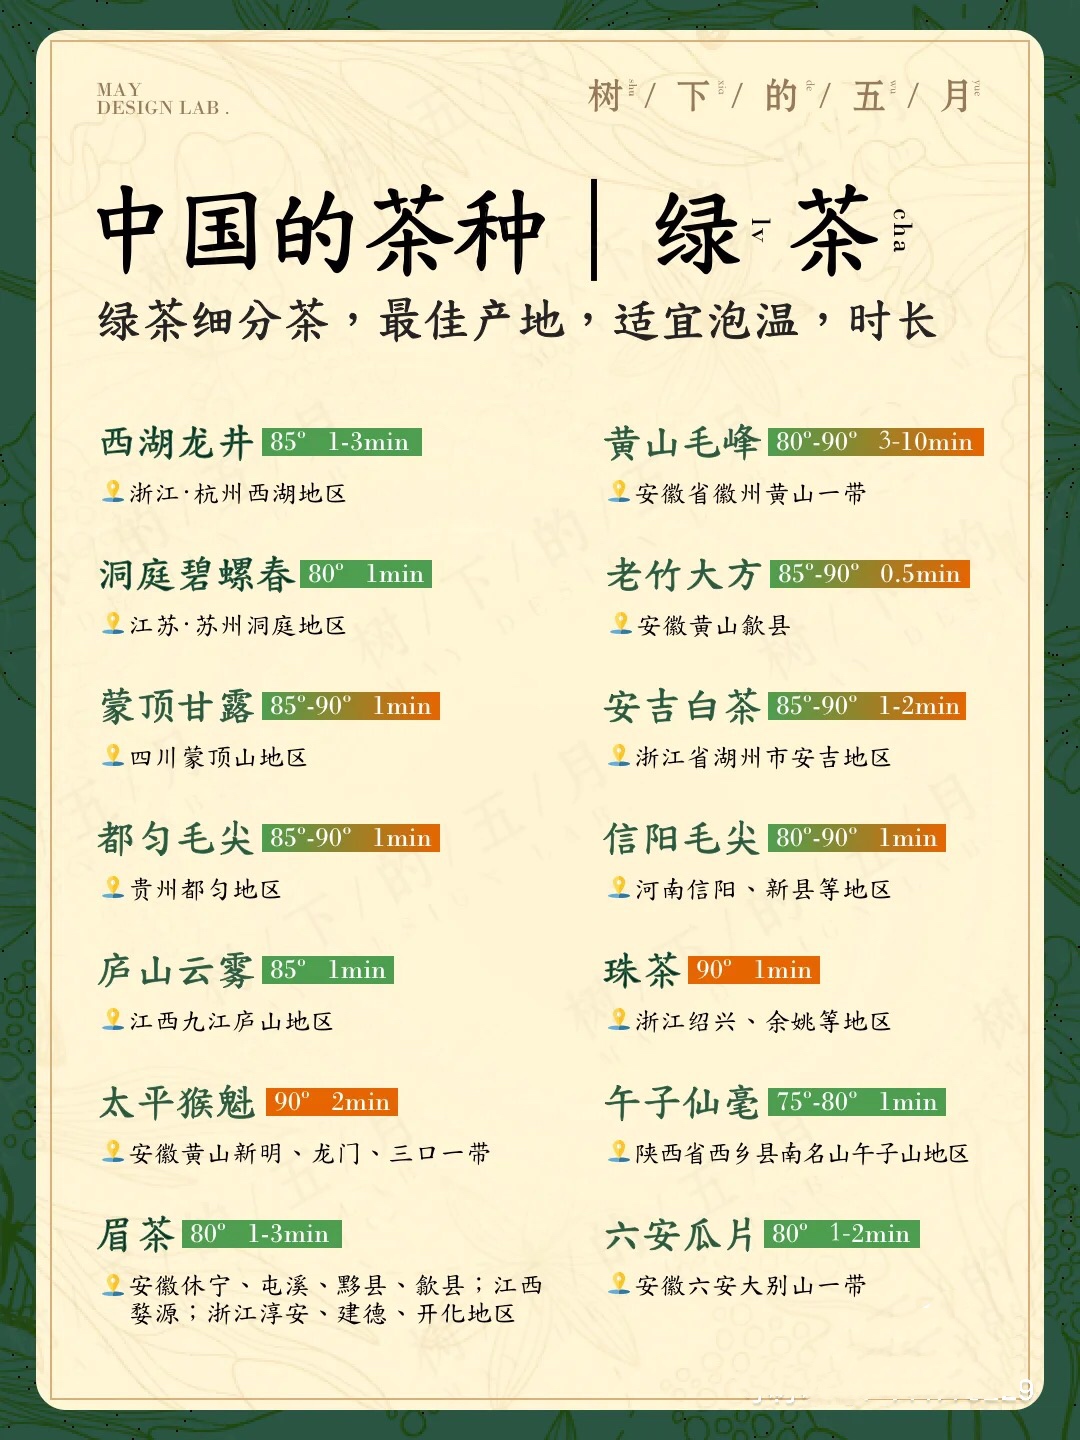 中国绿茶排名，哪个牌子好喝？泡茶有什么讲究？夏天茶叶存储